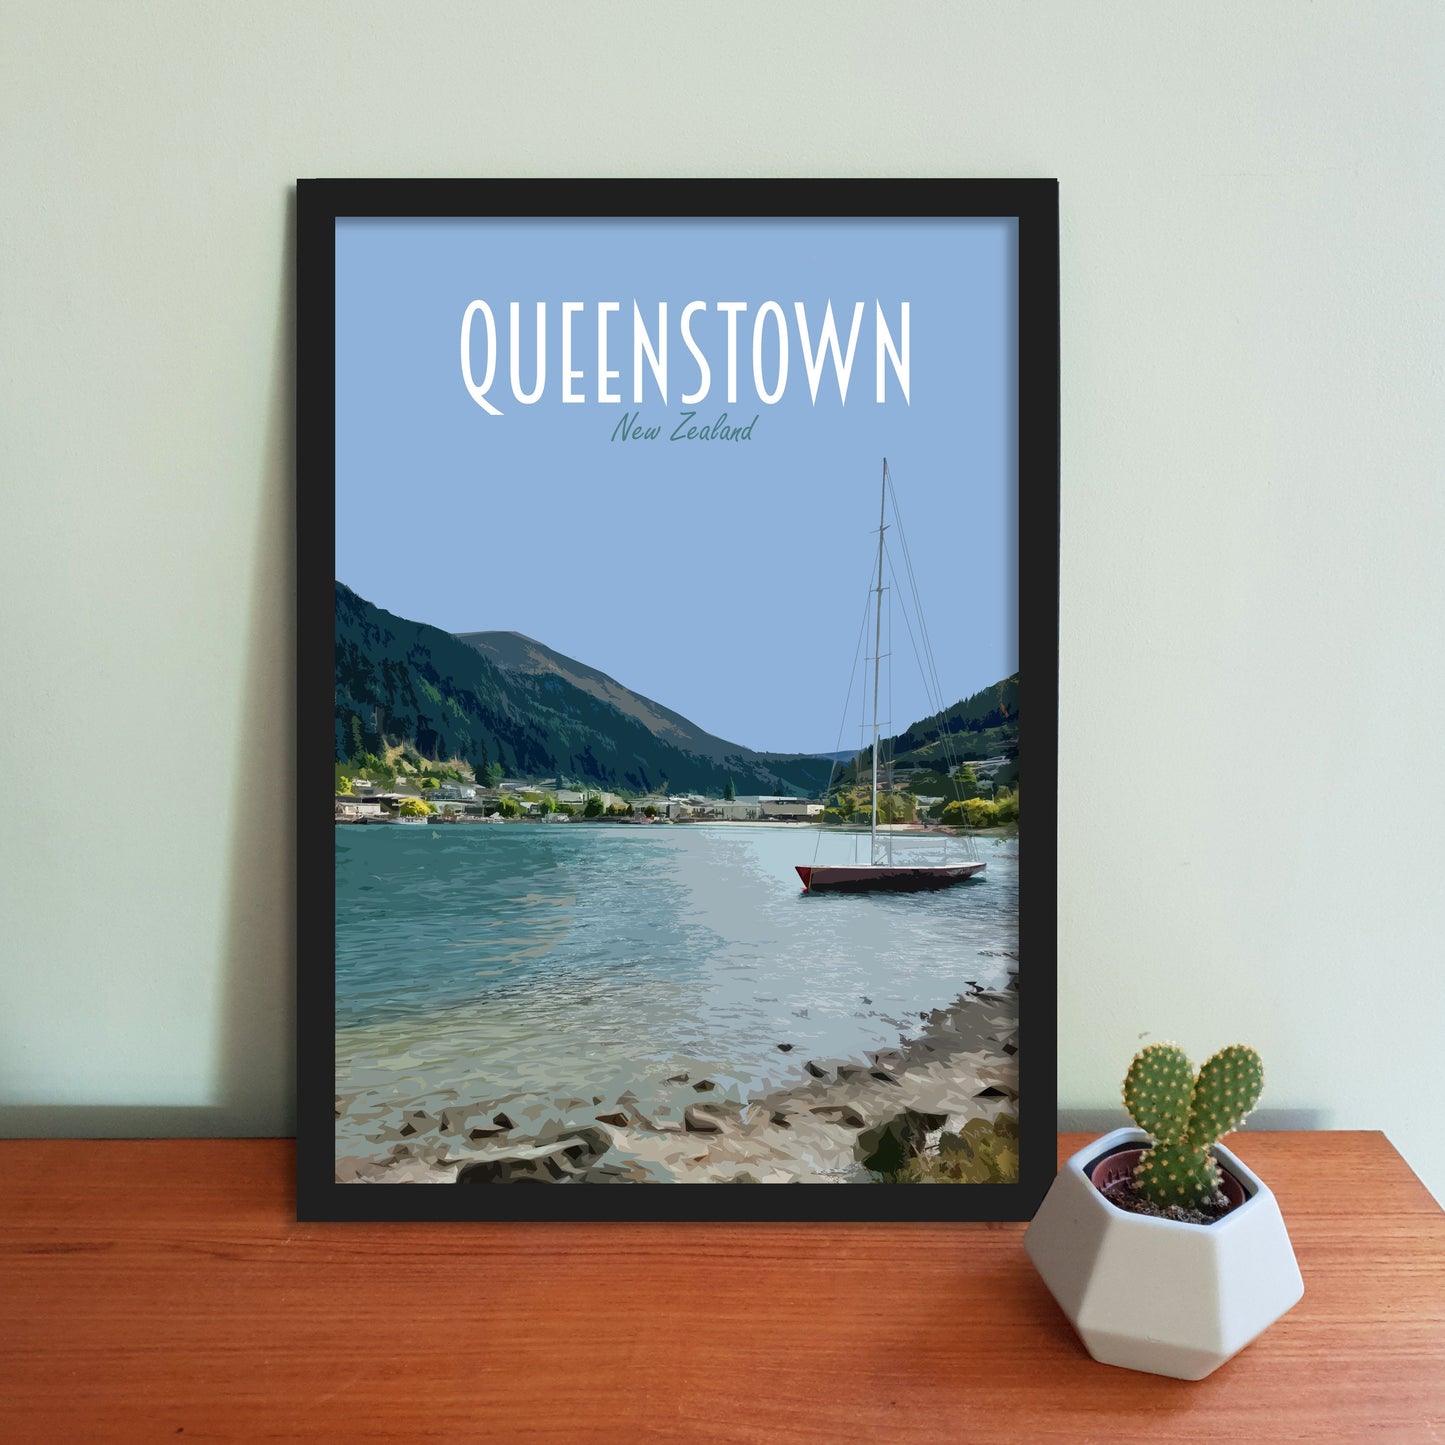 Queenstown Travel Poster